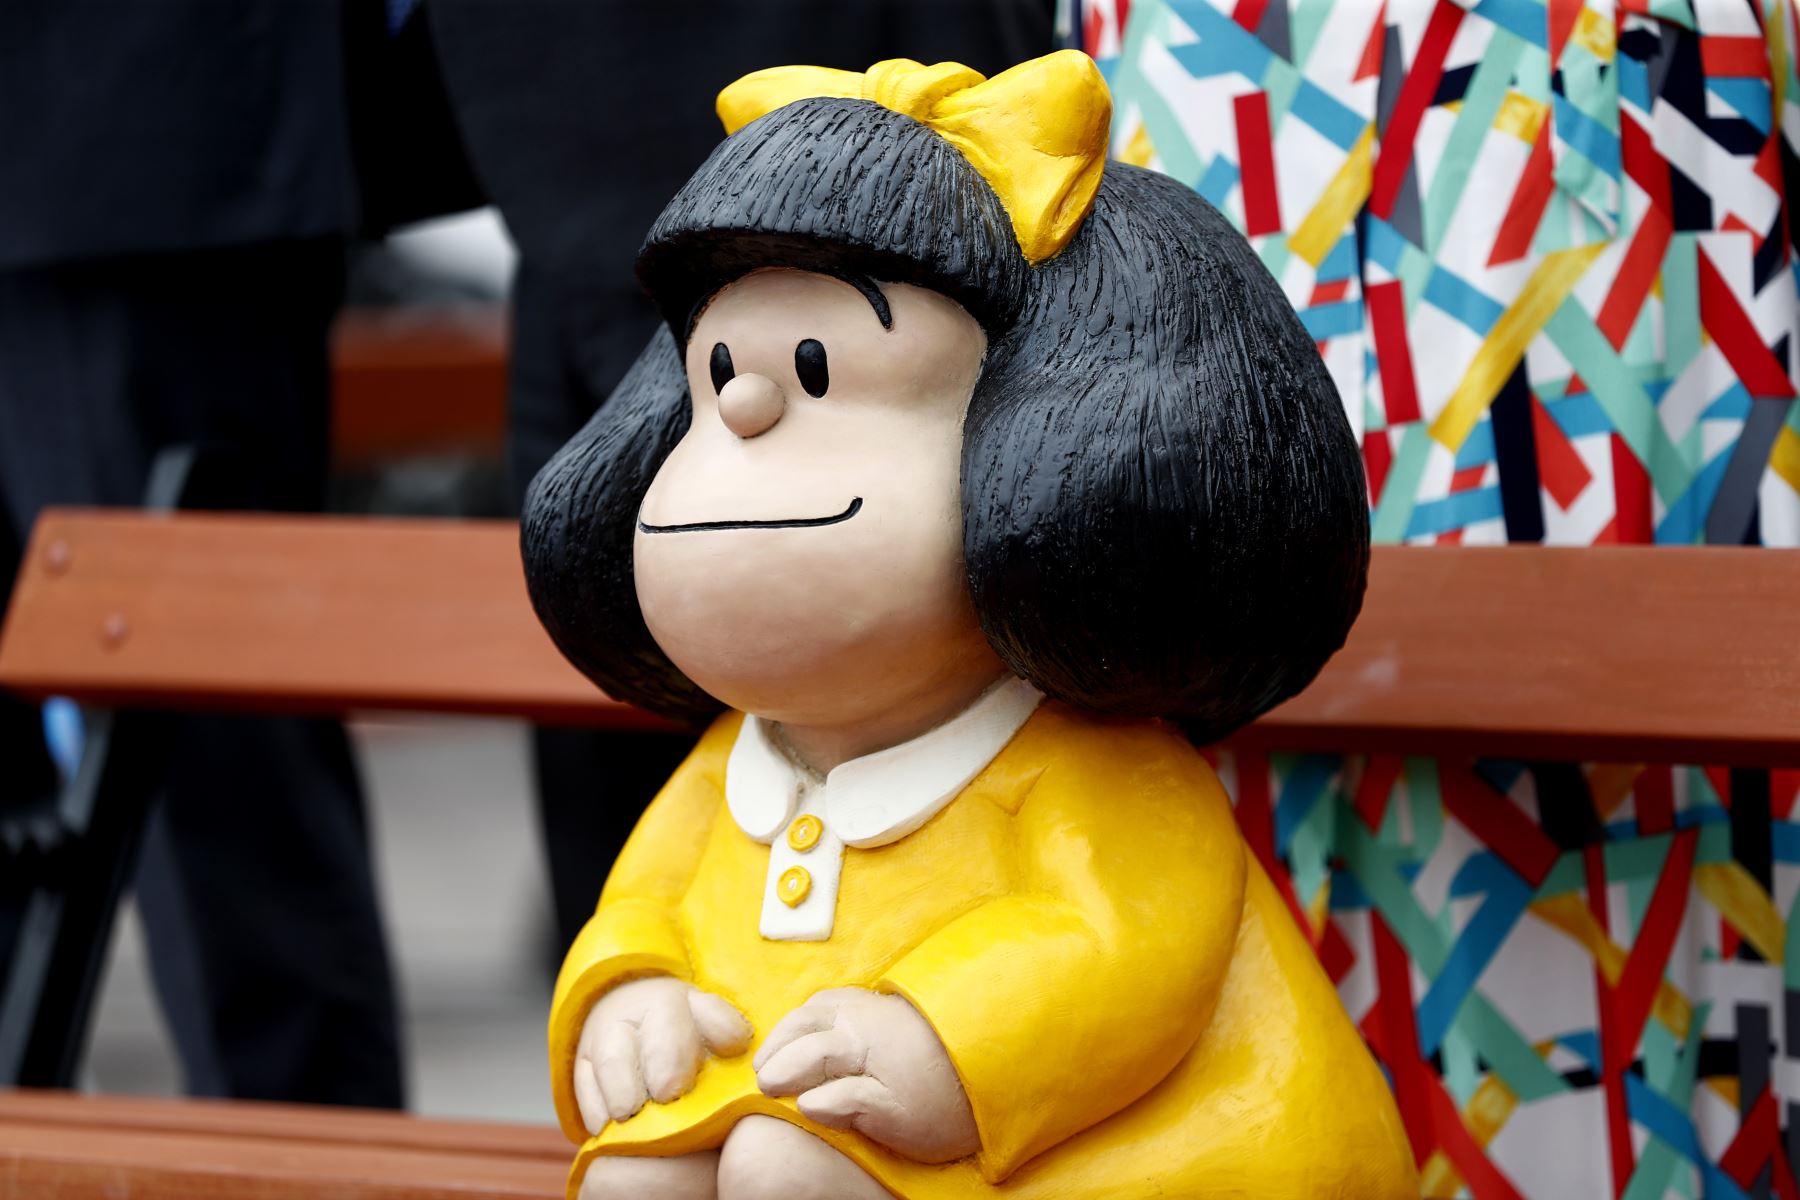 Fue develada una pequeña escultura de Mafalda, popular personaje de tiras cómicas de Argentina, instalada en una de las bancas de la segunda cuadra del Boulevard Sáenz Peña en el distrito de Barranco. Foto: ANDINA/Daniel Bracamonte